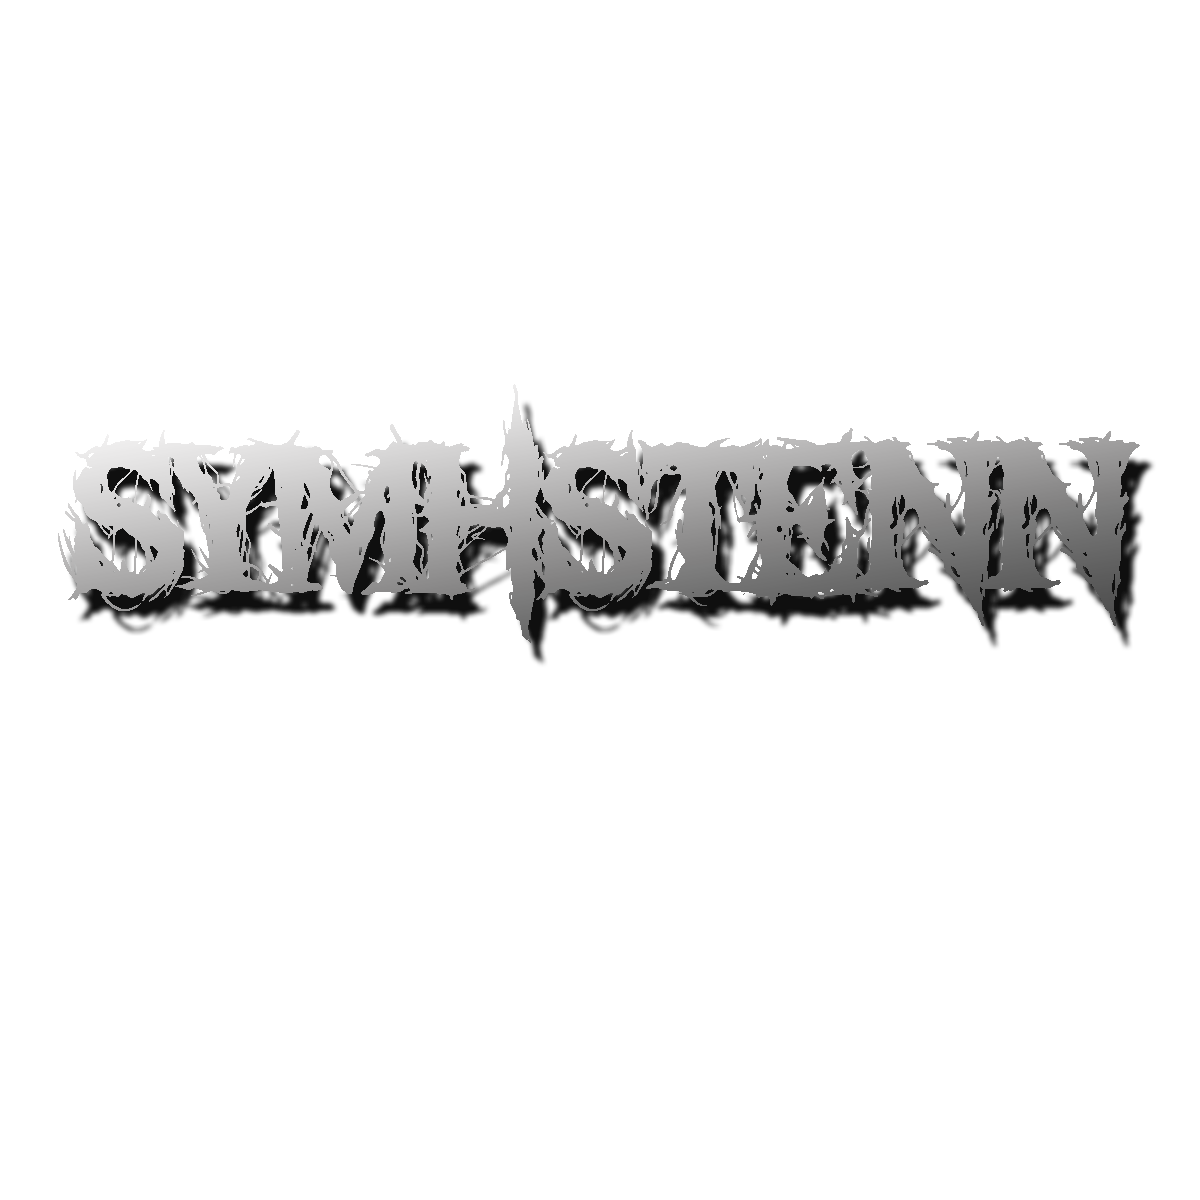 bandas rock Metalcore logo matheus divulgação arte Symhstenn